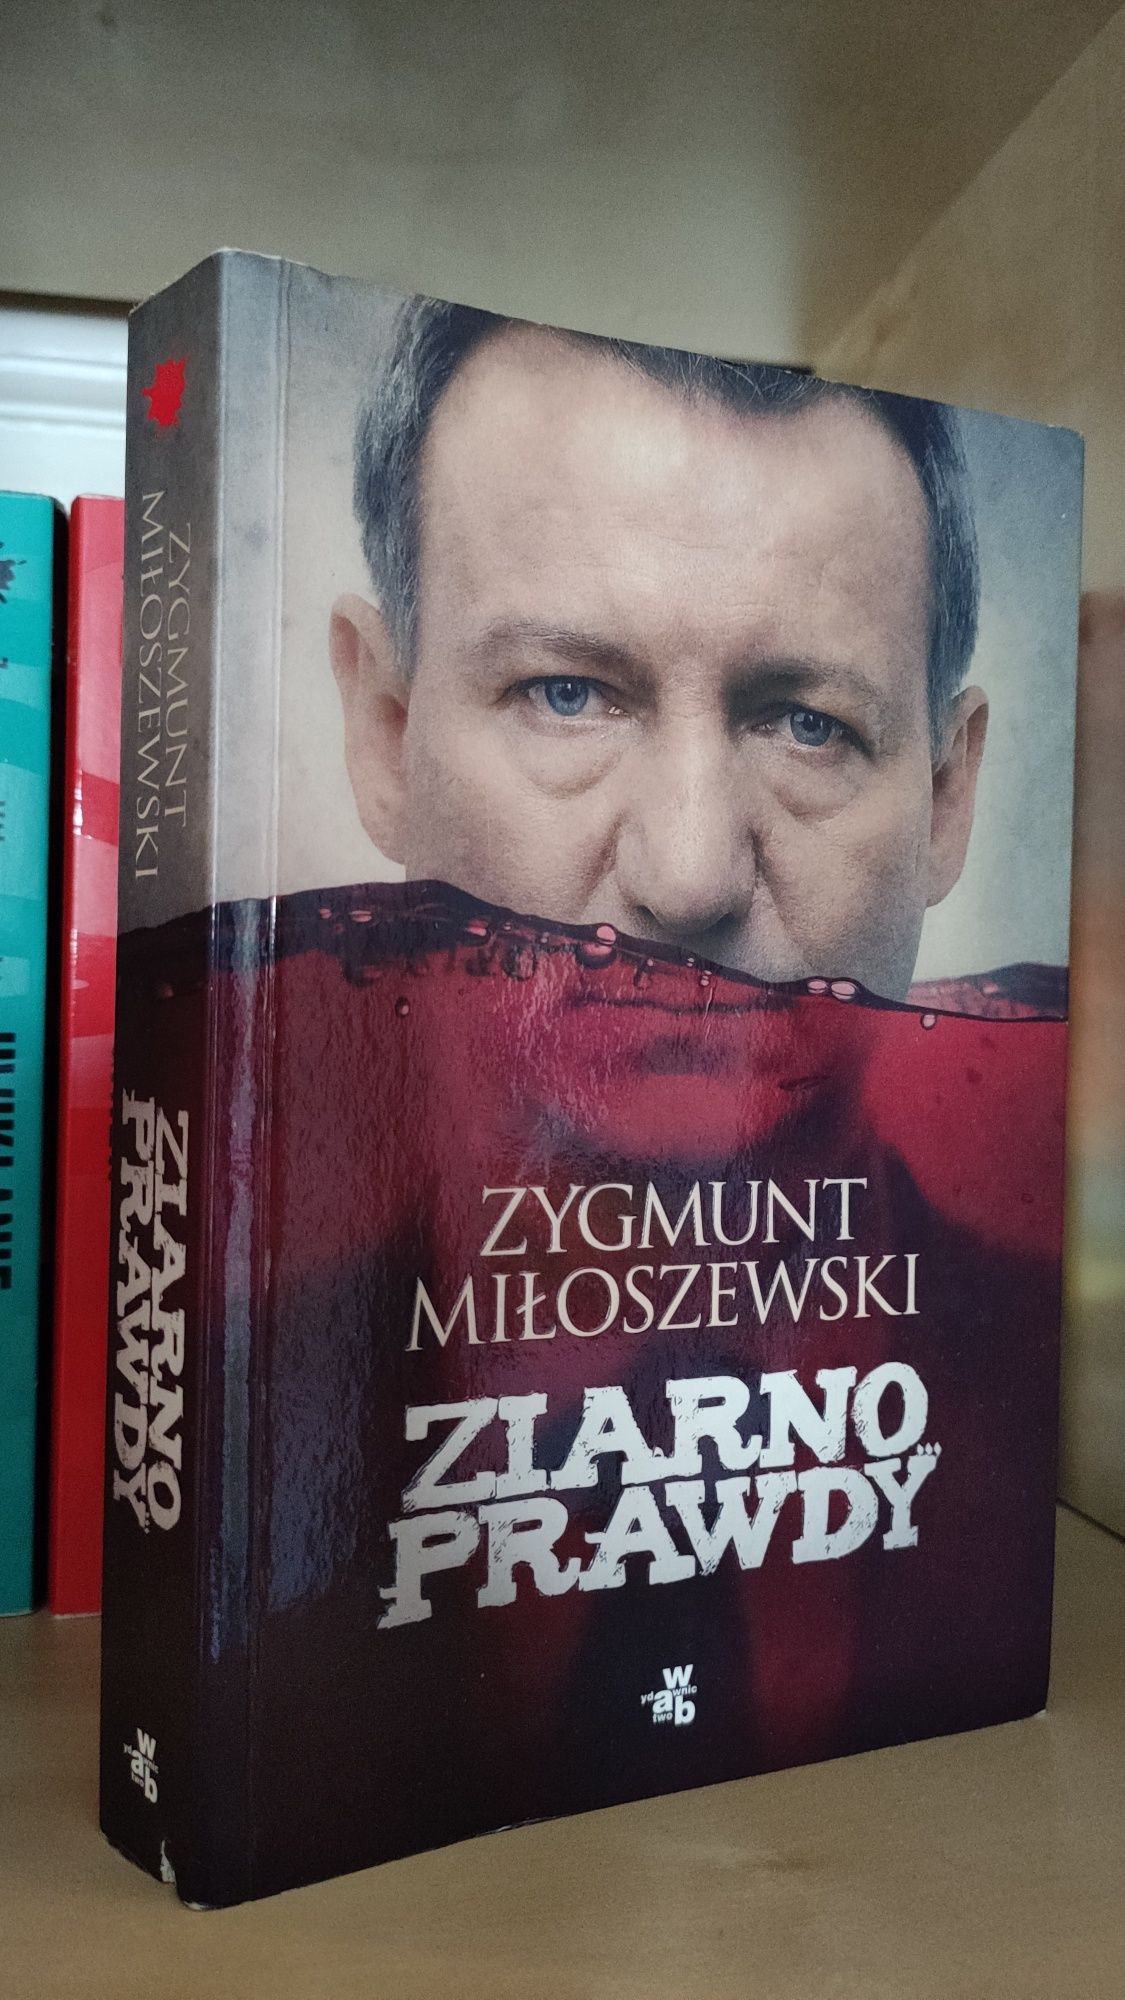 Zygmunt Miłoszewski pakiet Gniew/ Ziarno prawdy